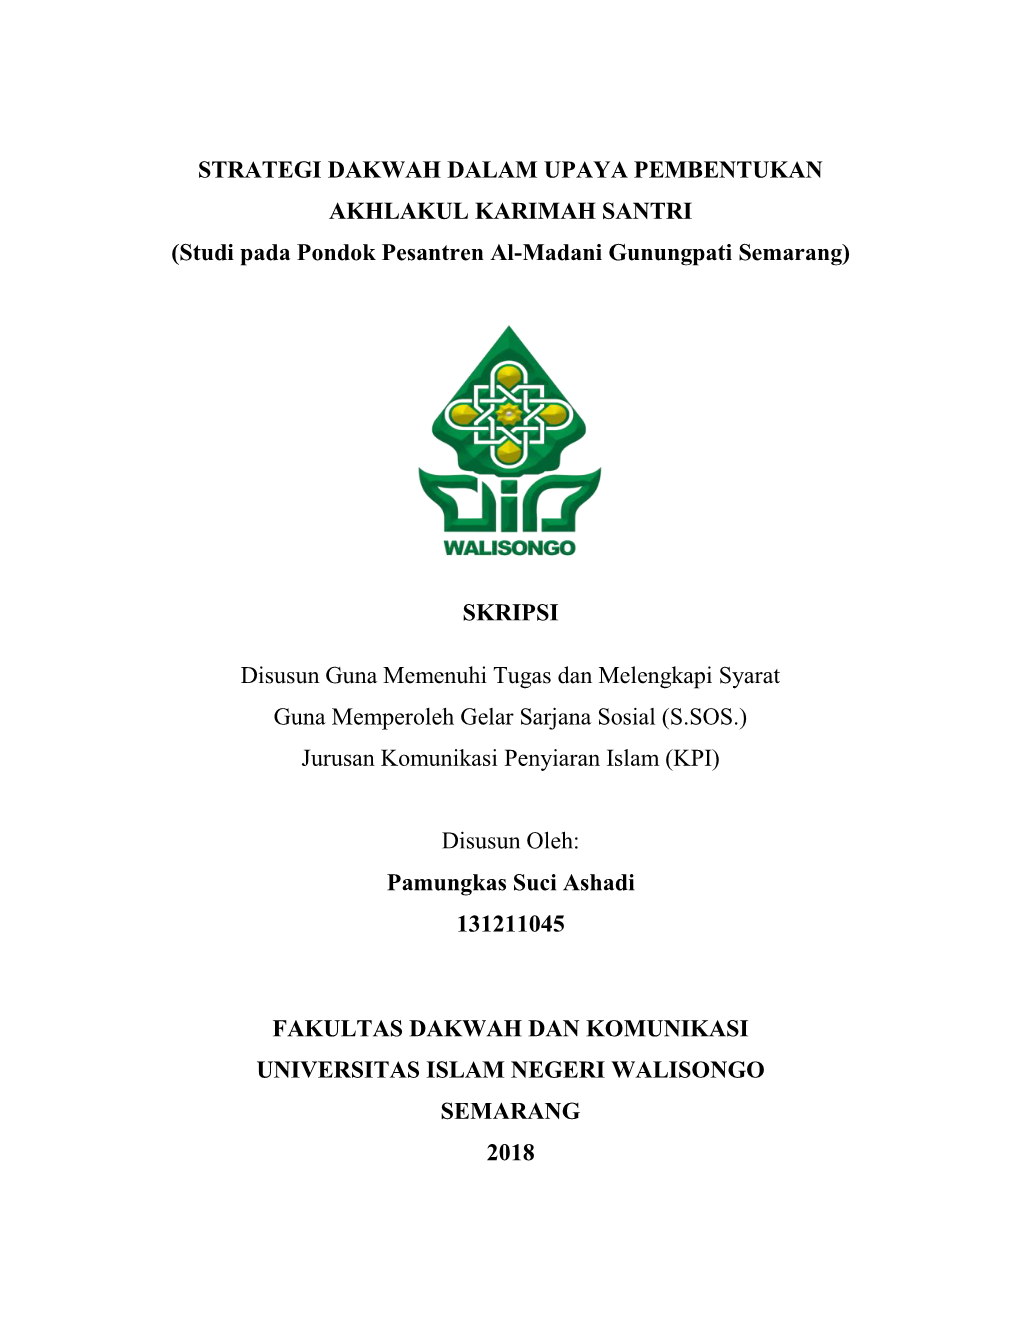 STRATEGI DAKWAH DALAM UPAYA PEMBENTUKAN AKHLAKUL KARIMAH SANTRI (Studi Pada Pondok Pesantren Al-Madani Gunungpati Semarang)